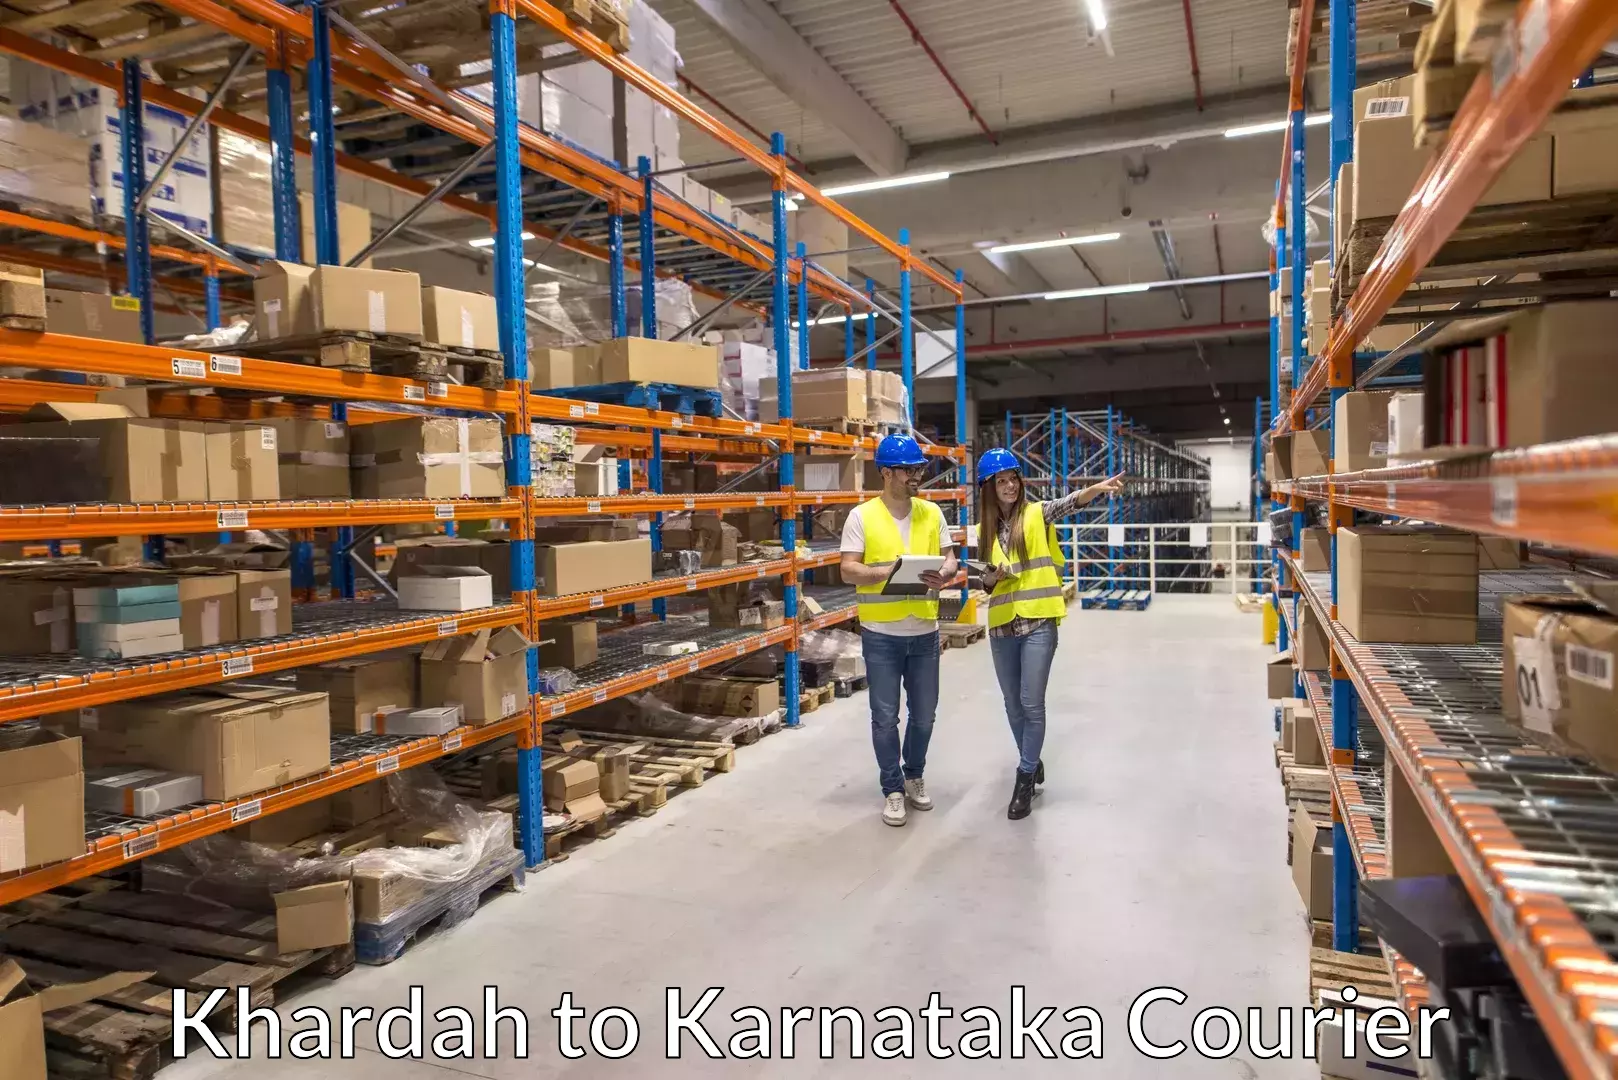 Baggage transport scheduler Khardah to Karnataka